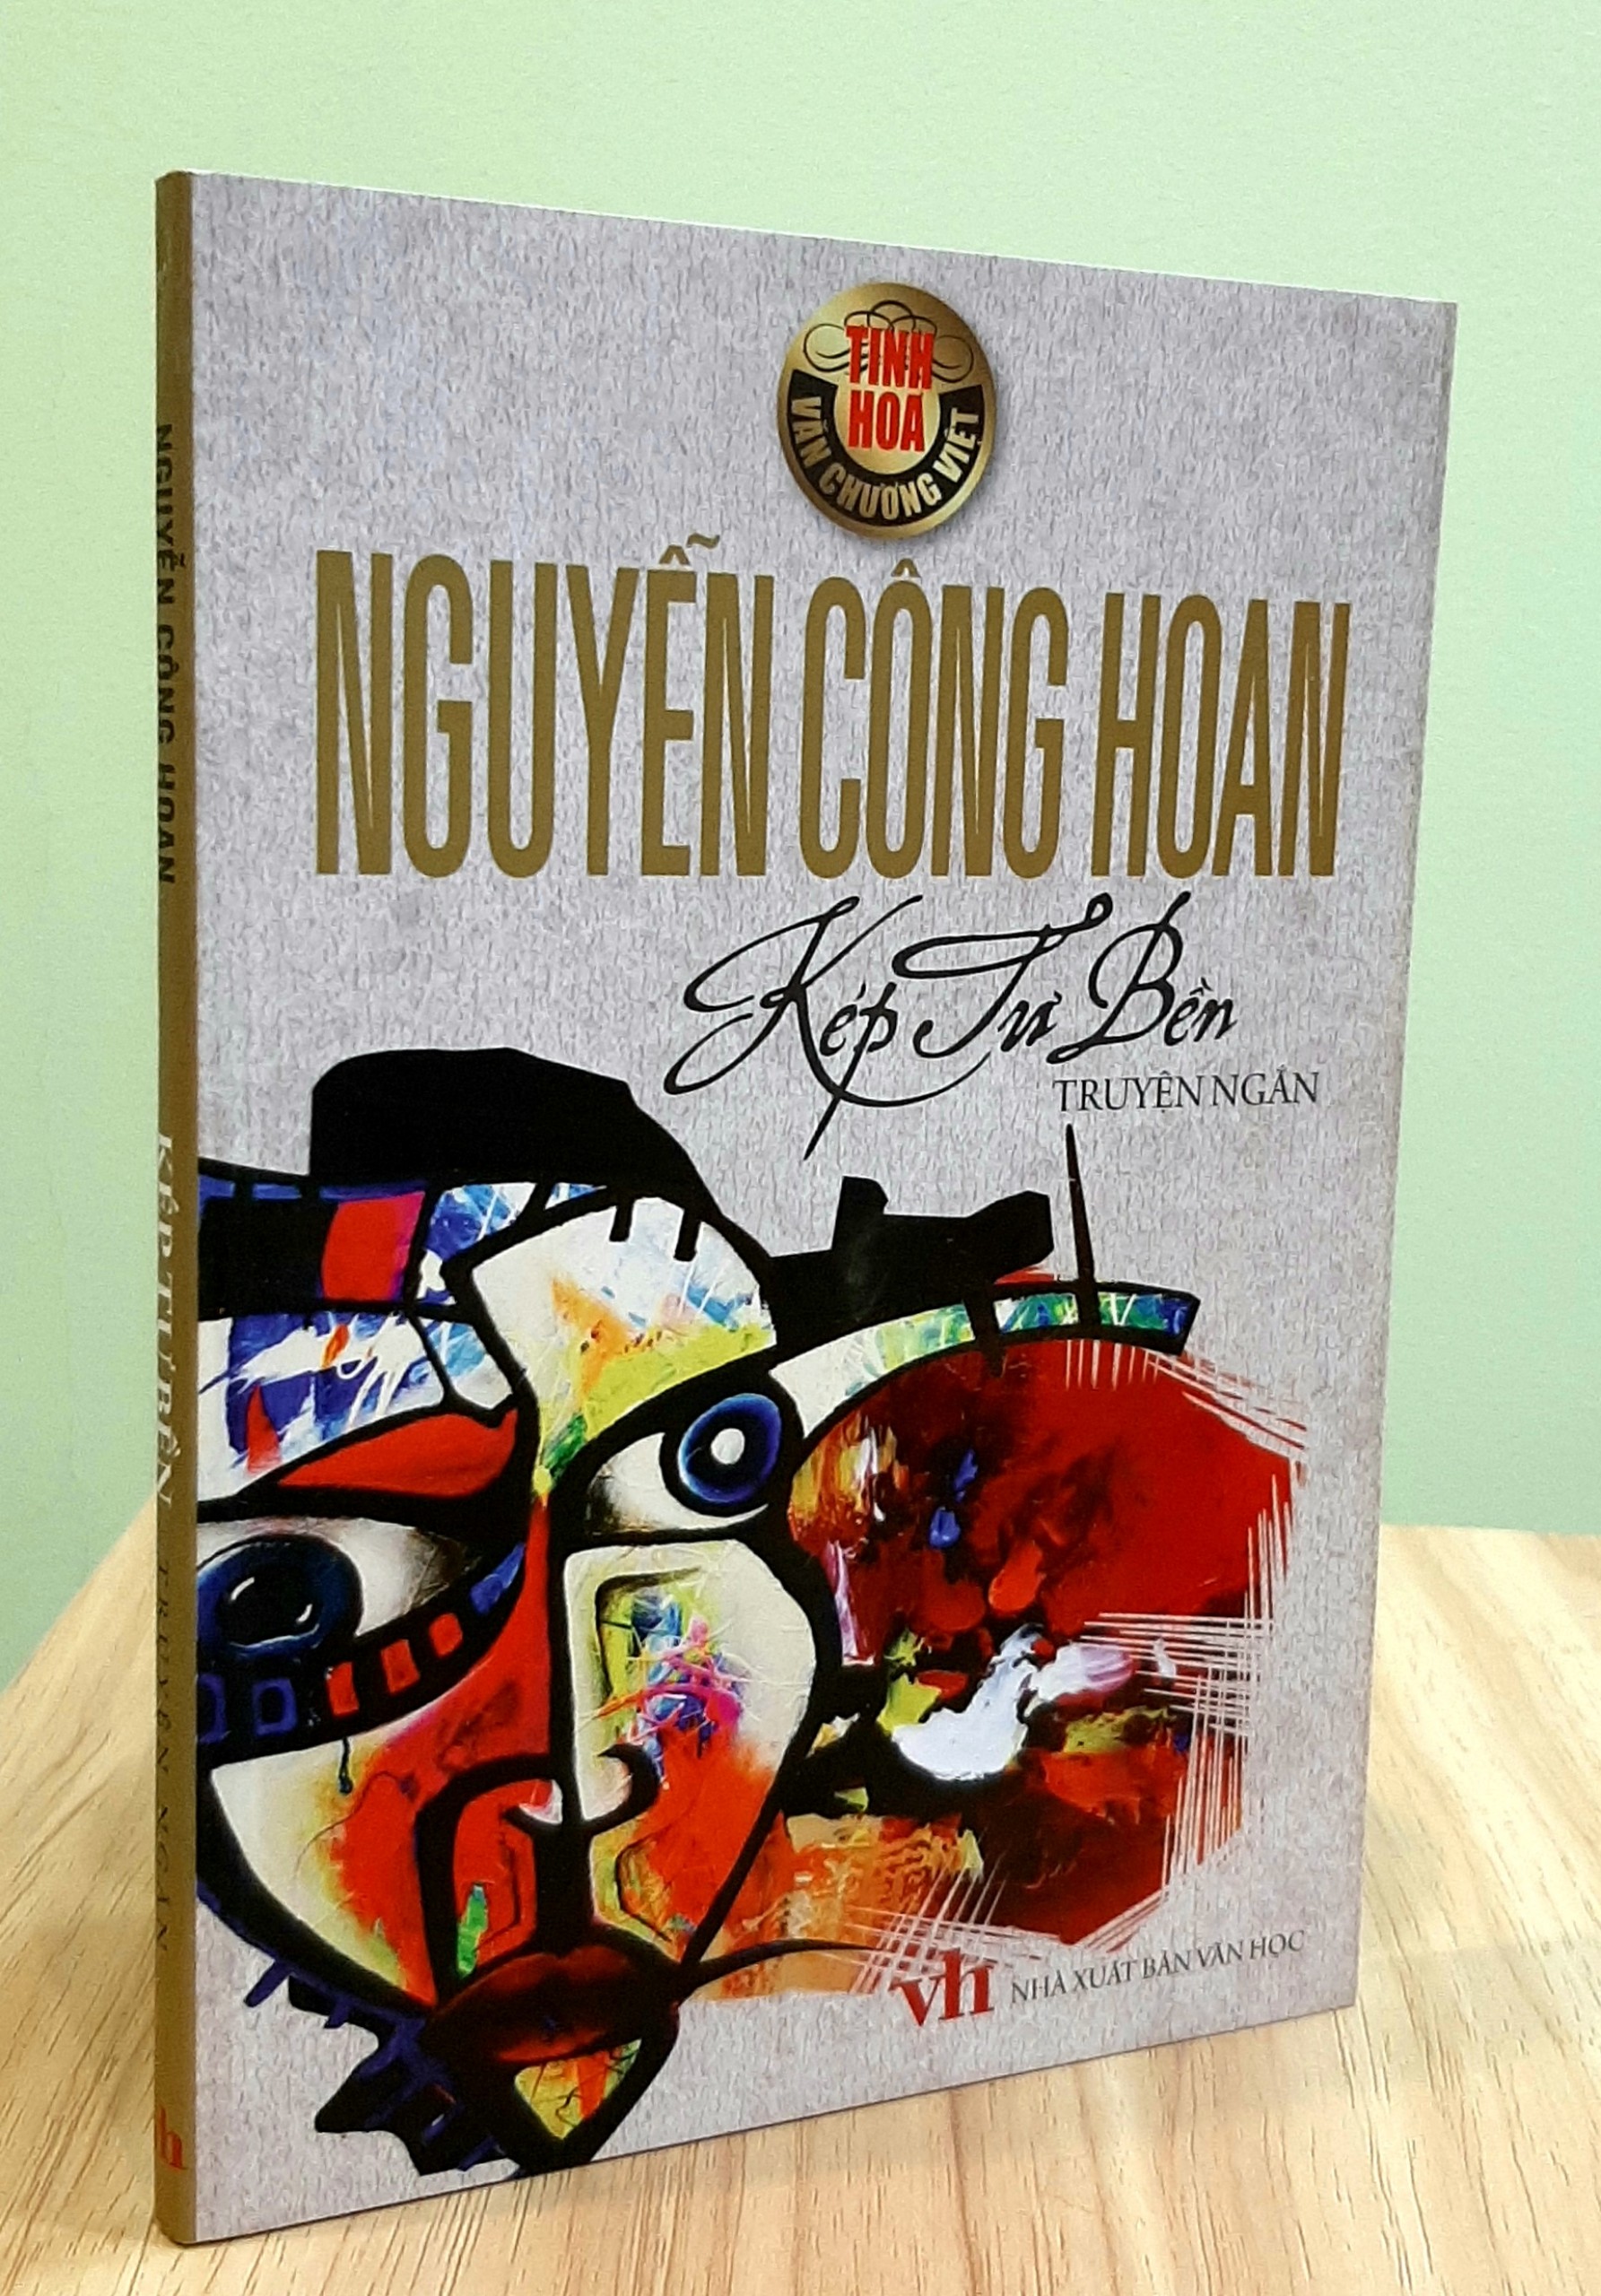 Kép Tư Bền - Nguyễn Công Hoan - Danh tác văn học Việt Nam